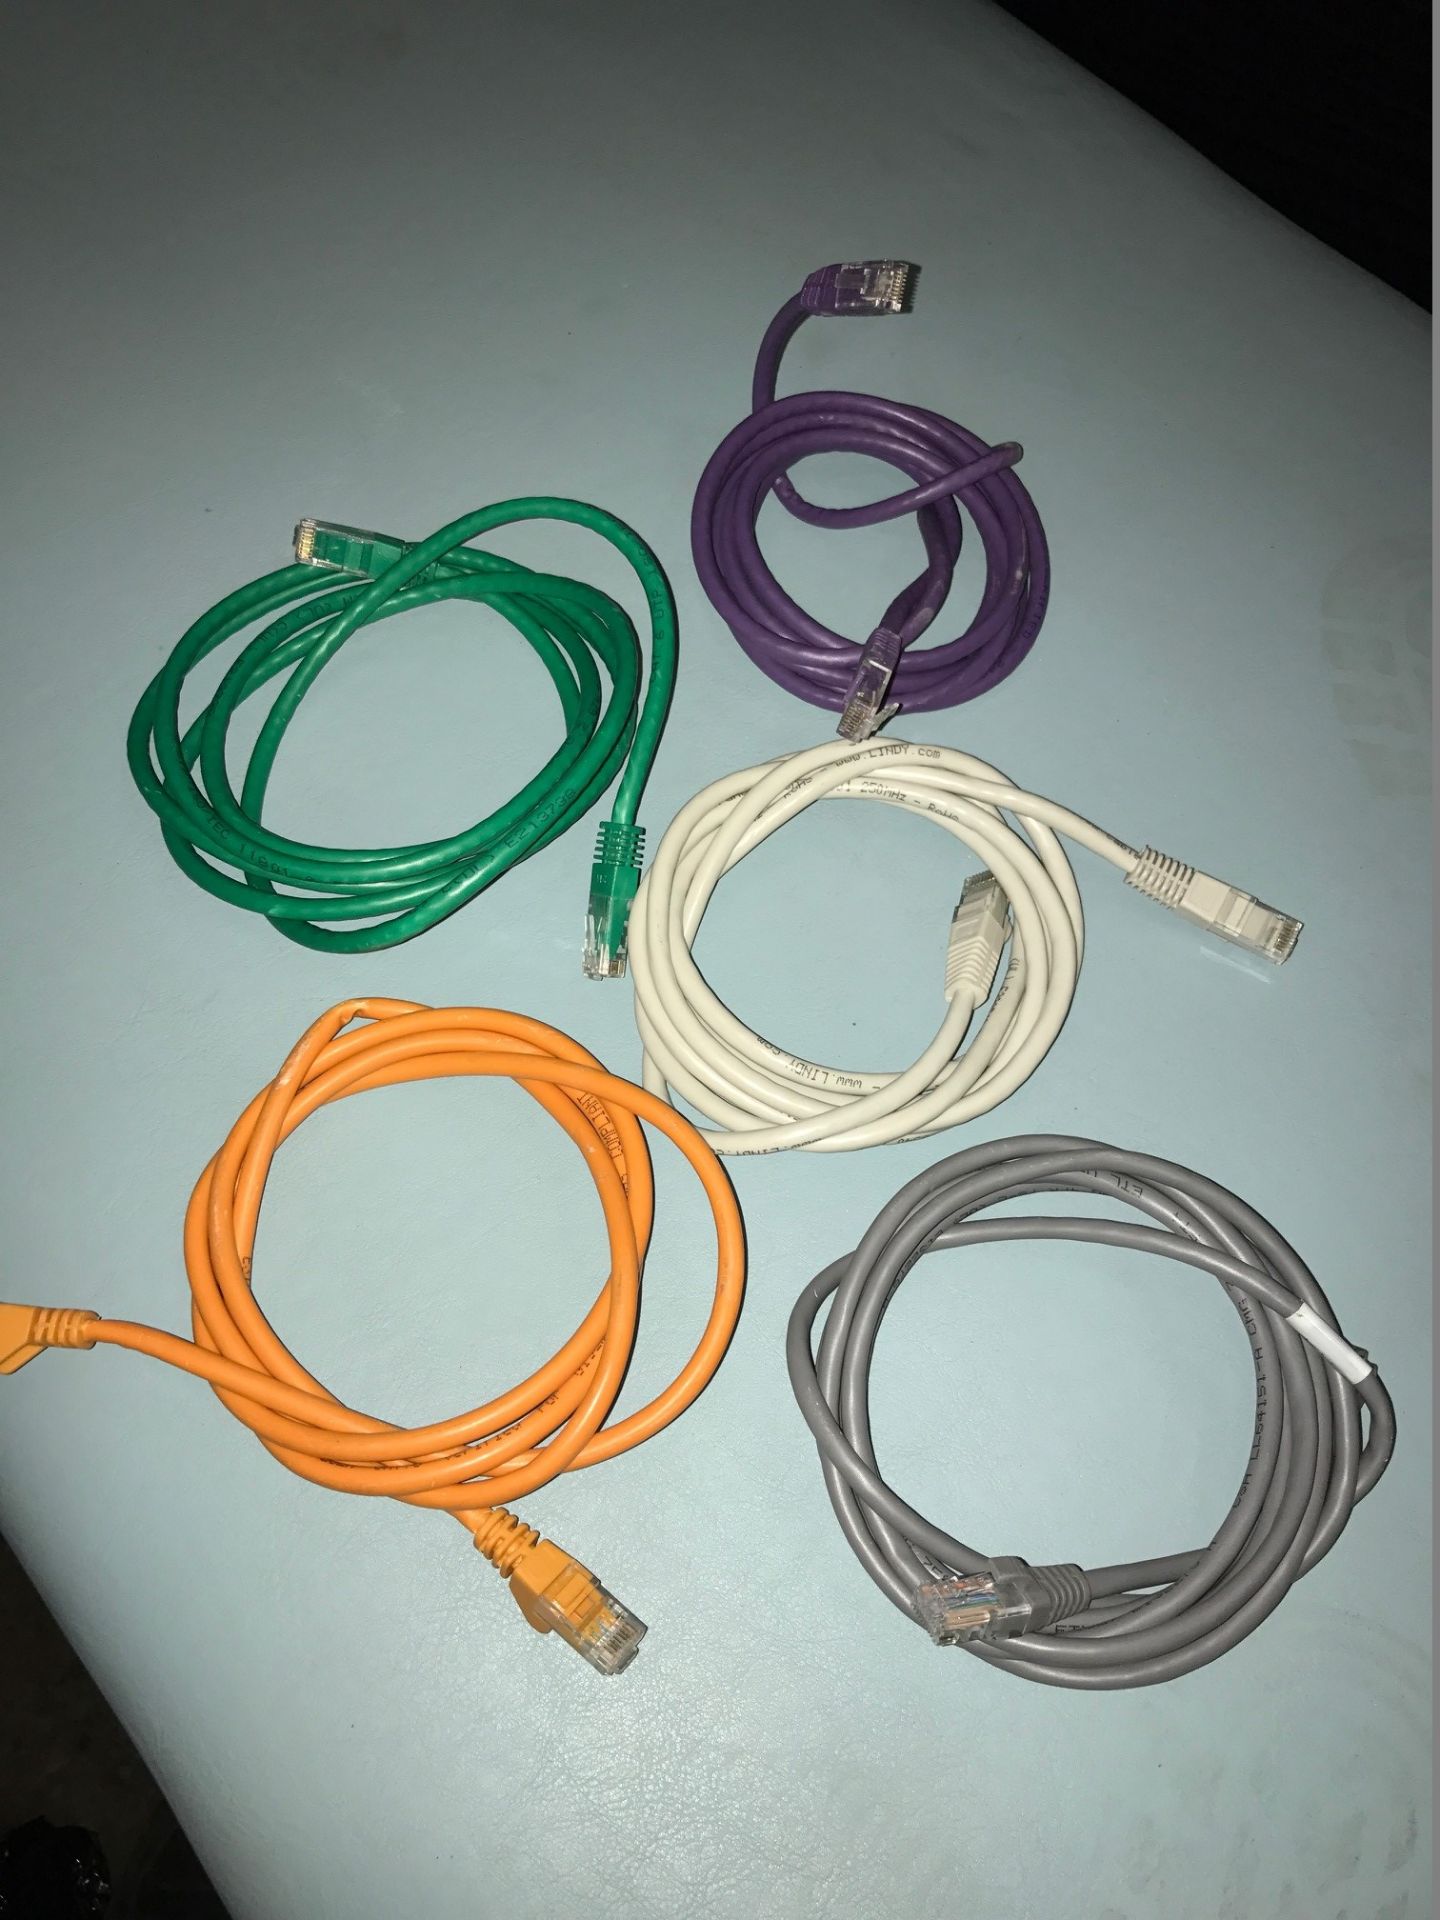 10 x Ethernet Cables (Various Colours/Lengths)